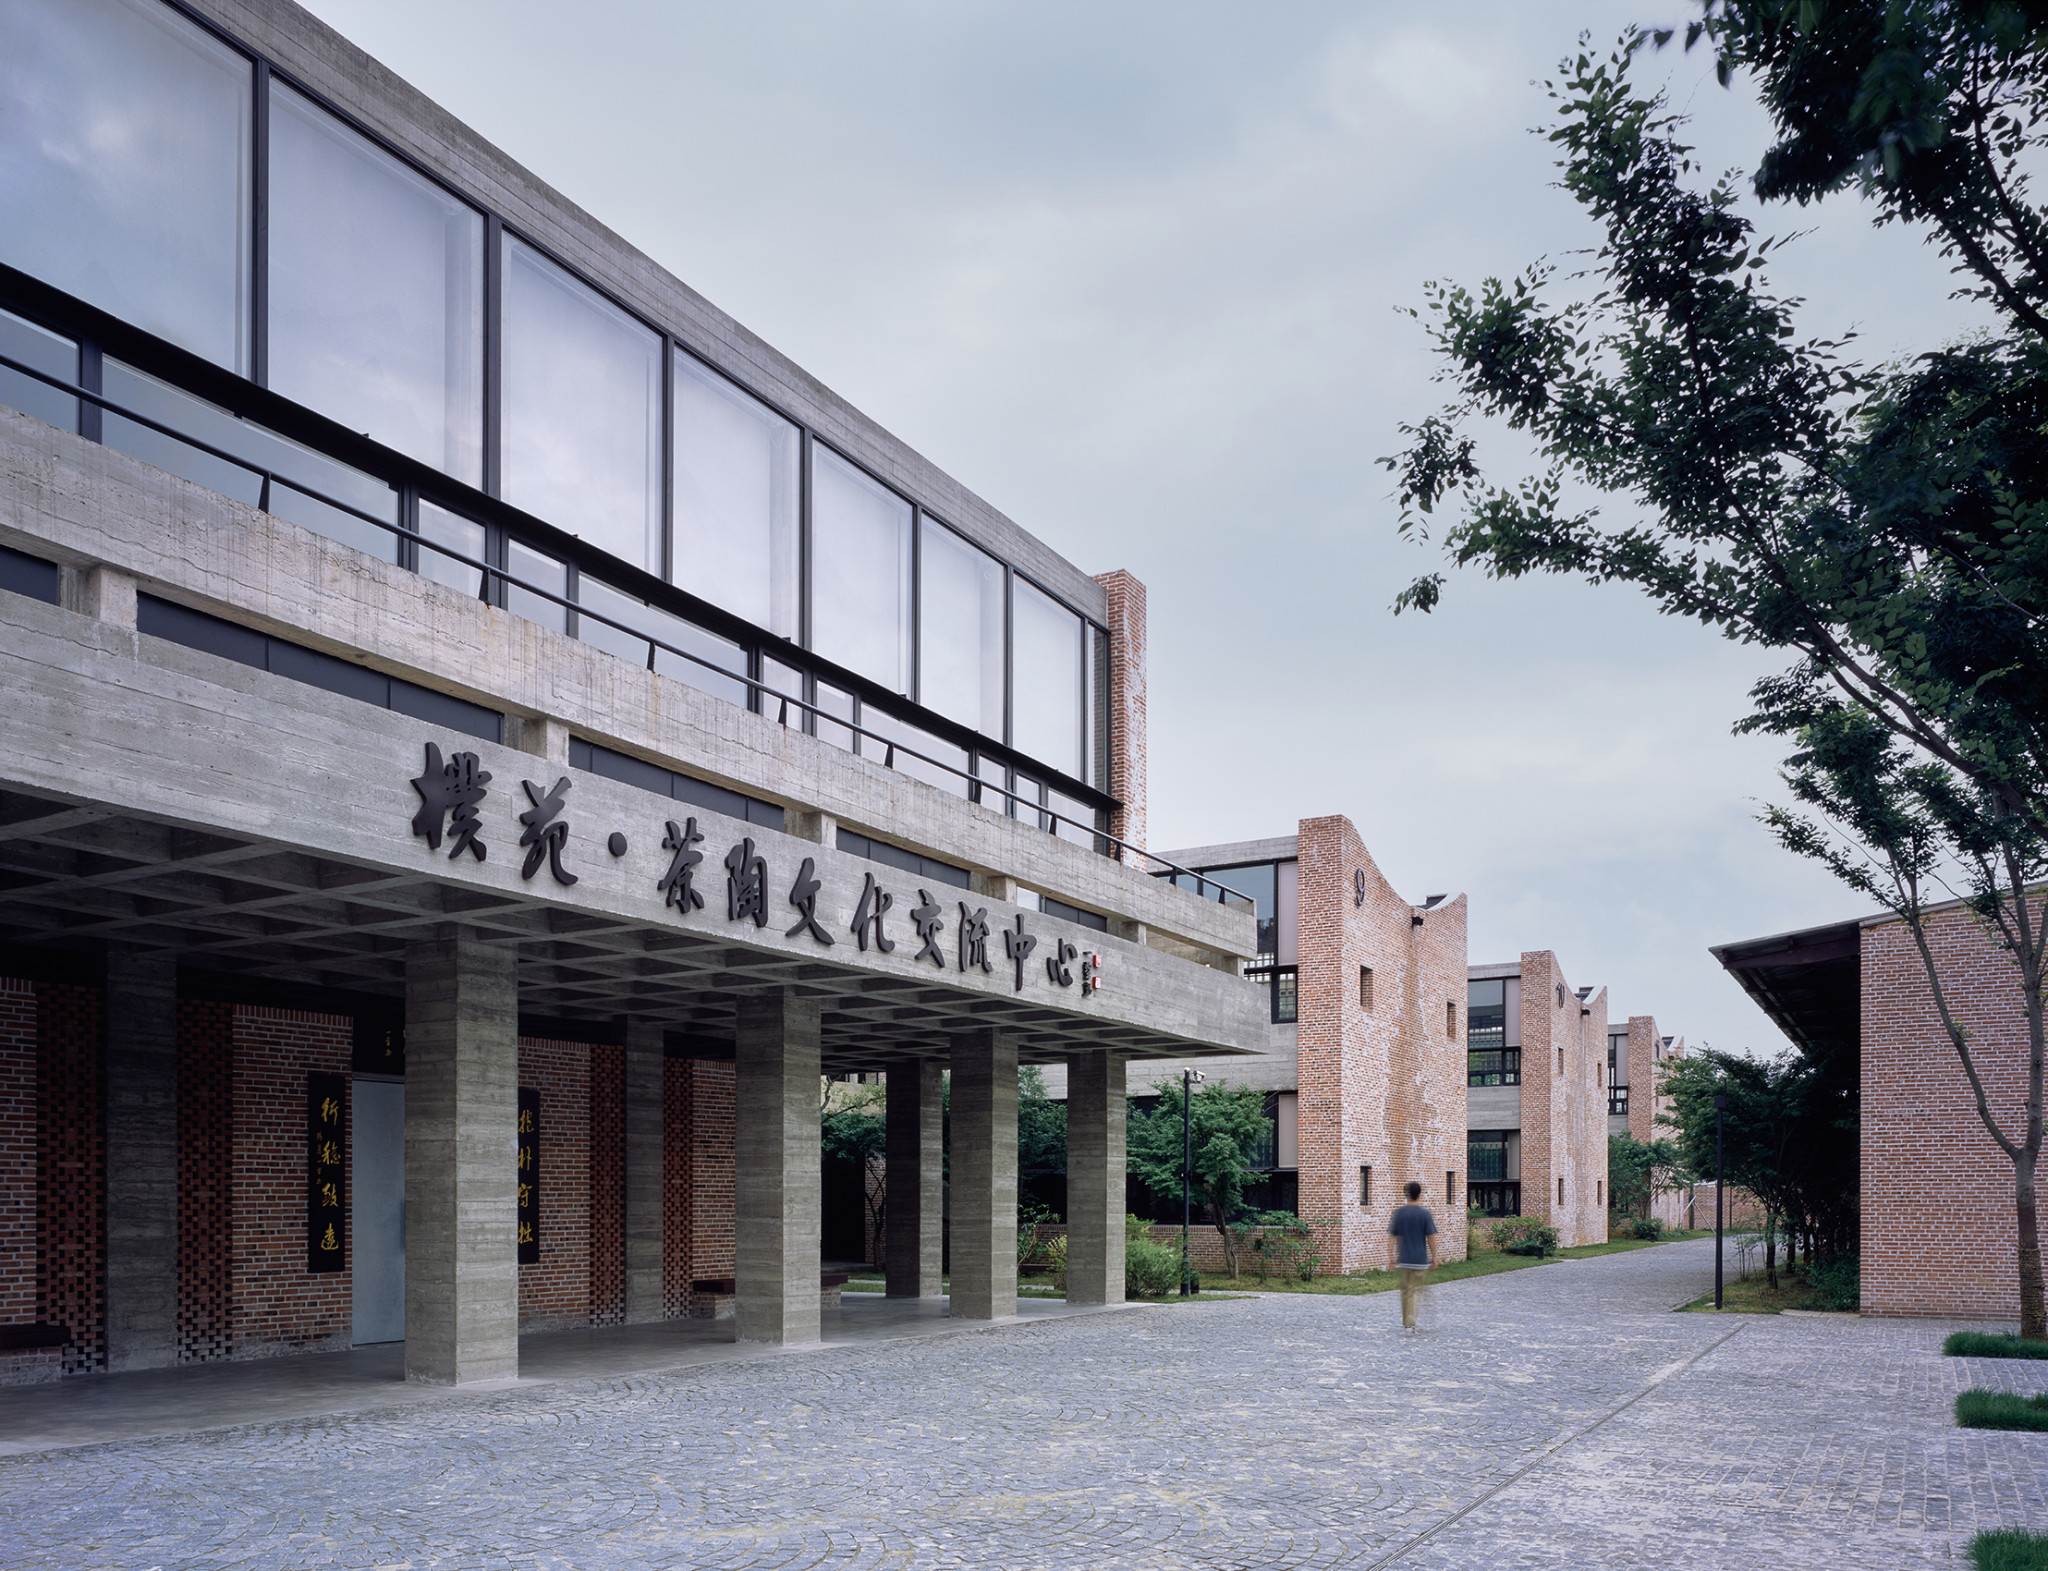 展陈楼与南侧的教学楼©陈颢_The exhibition building and the classroom units on the south side©Chen Hao